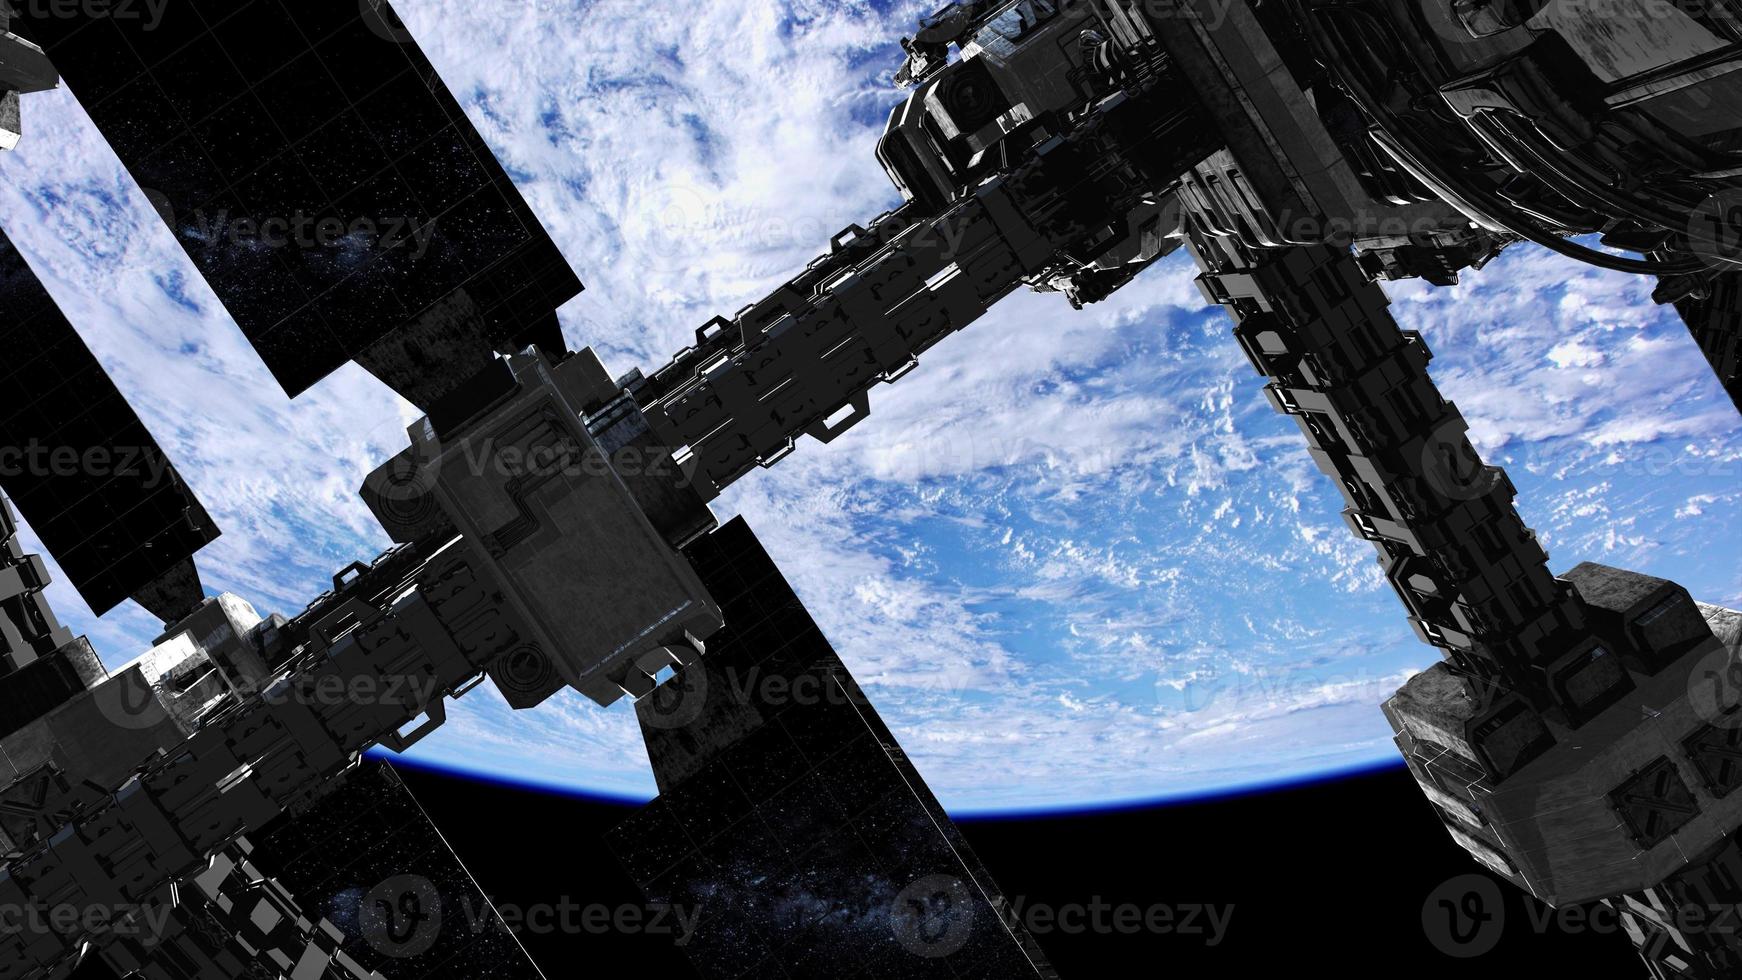 internationaal ruimtestation in de ruimte boven de planeet aarde foto